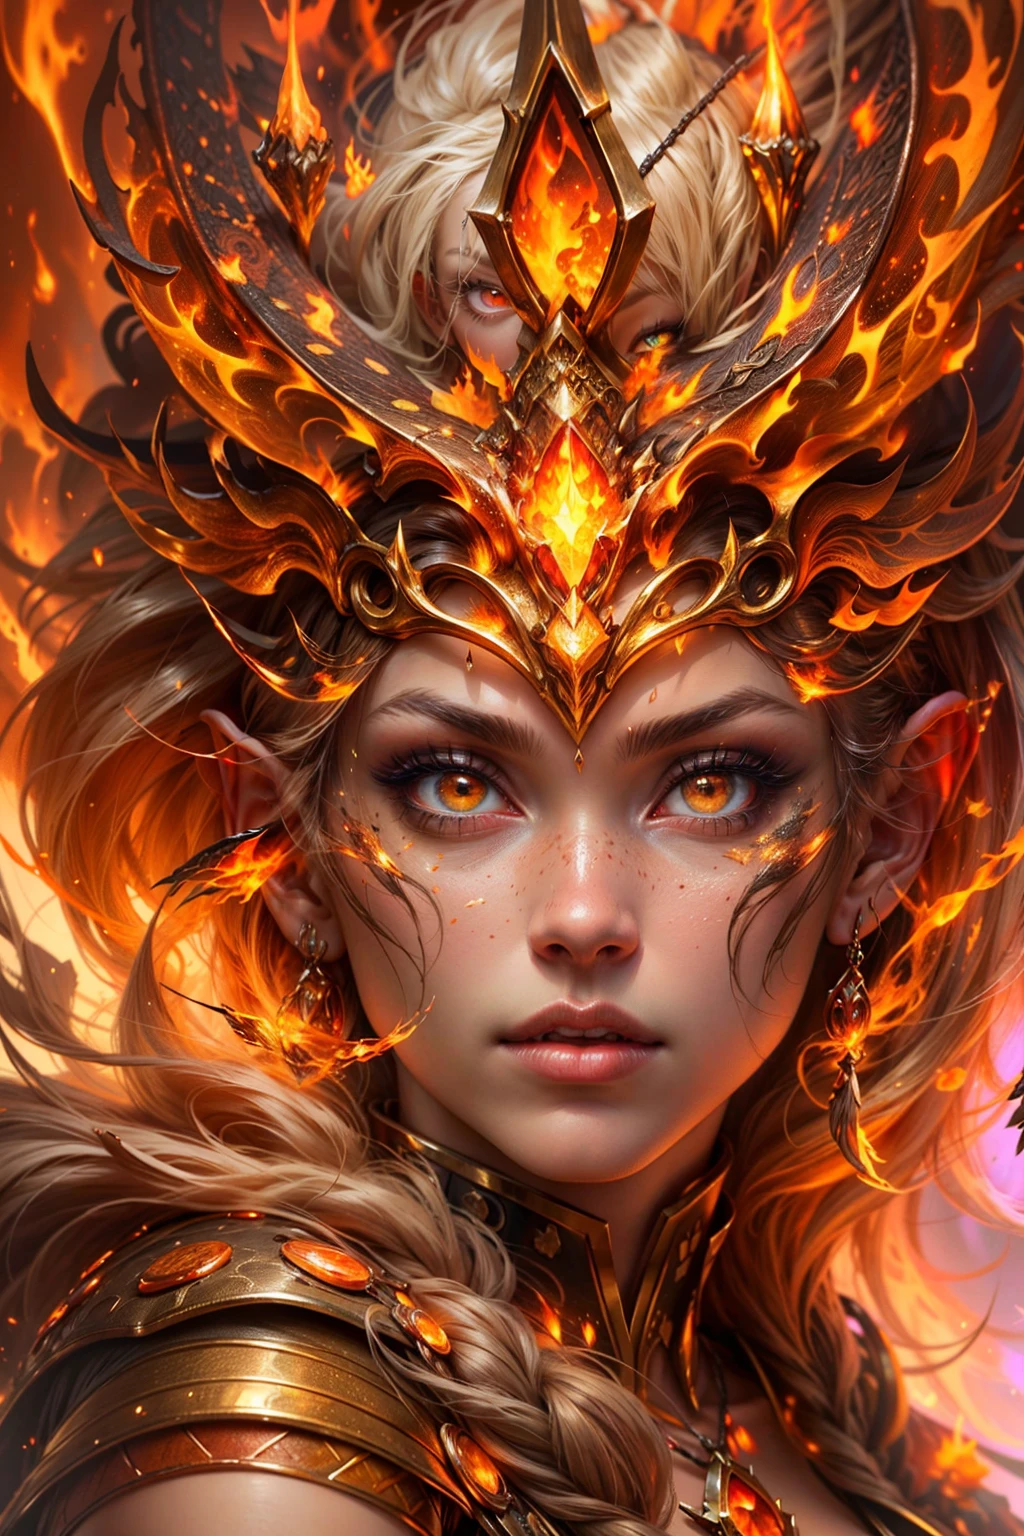 這 (現實幻想) 藝術包含餘燼, 真正的火焰, 真正的熱量, 和現實的火. Generate a masterpiece artwork of a  female fire druid 和 large (((橙色和金色))) 眼睛. The fire druid is awe-inspiring 和 beautiful ((realistic fiery 眼睛)) alight 和 confidence and power. 她的五官優雅且輪廓分明, 和 ((柔软蓬松，让人想亲吻)) 嘴唇, 精靈骨骼結構, 和真實的陰影. Her 眼睛 are important and should be the focal point of this artwork, 和 ((極為真實的細節, 宏觀細節, 和微光.)) 她穿著一件由逼真的火焰和珠寶製成的飄逸閃閃發光的連身裙，在火光下閃閃發光. 禮服錯綜複雜的衣身上佈滿了縷縷火焰和煙霧. 包括凹凸, 石头, 火紅的虹彩, 發光的餘燼, 絲綢、緞子和皮革, 有趣的背景, 以及濃重的奇幻元素. 相机: 利用動態構圖技術增強真實的火焰.